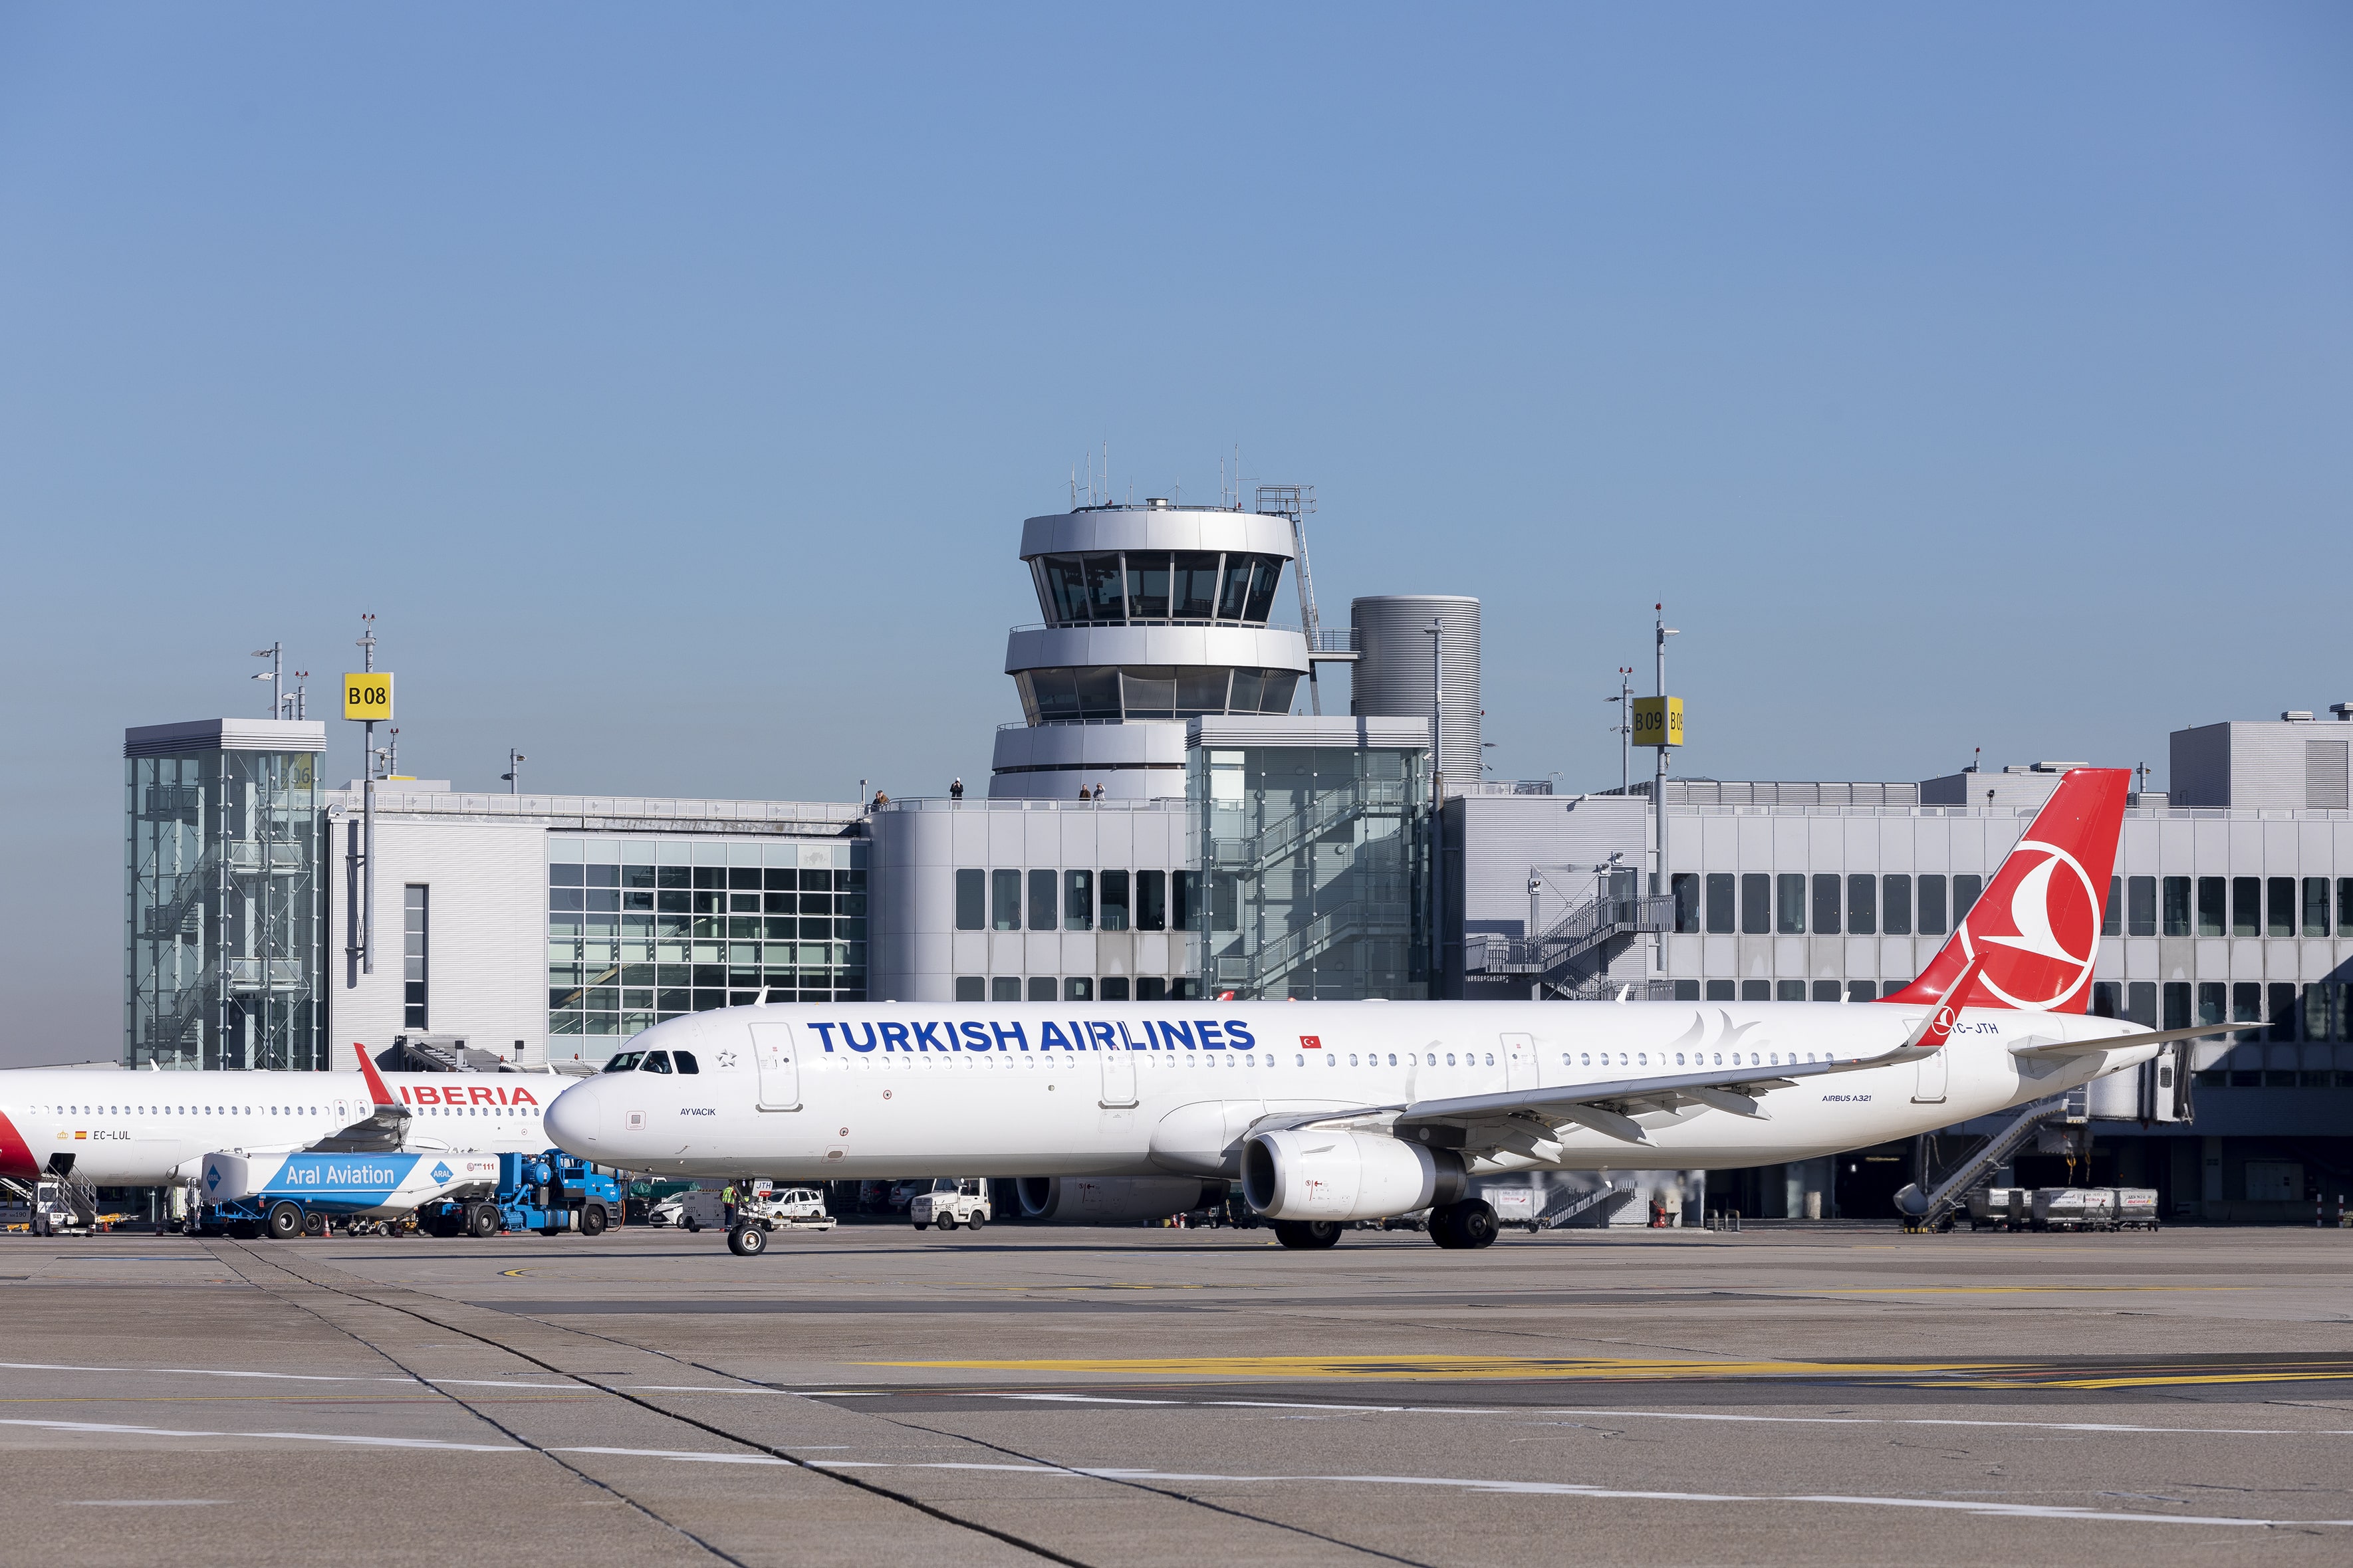 Groei luchthaven Düsseldorf mede door Nederlandse passagiers